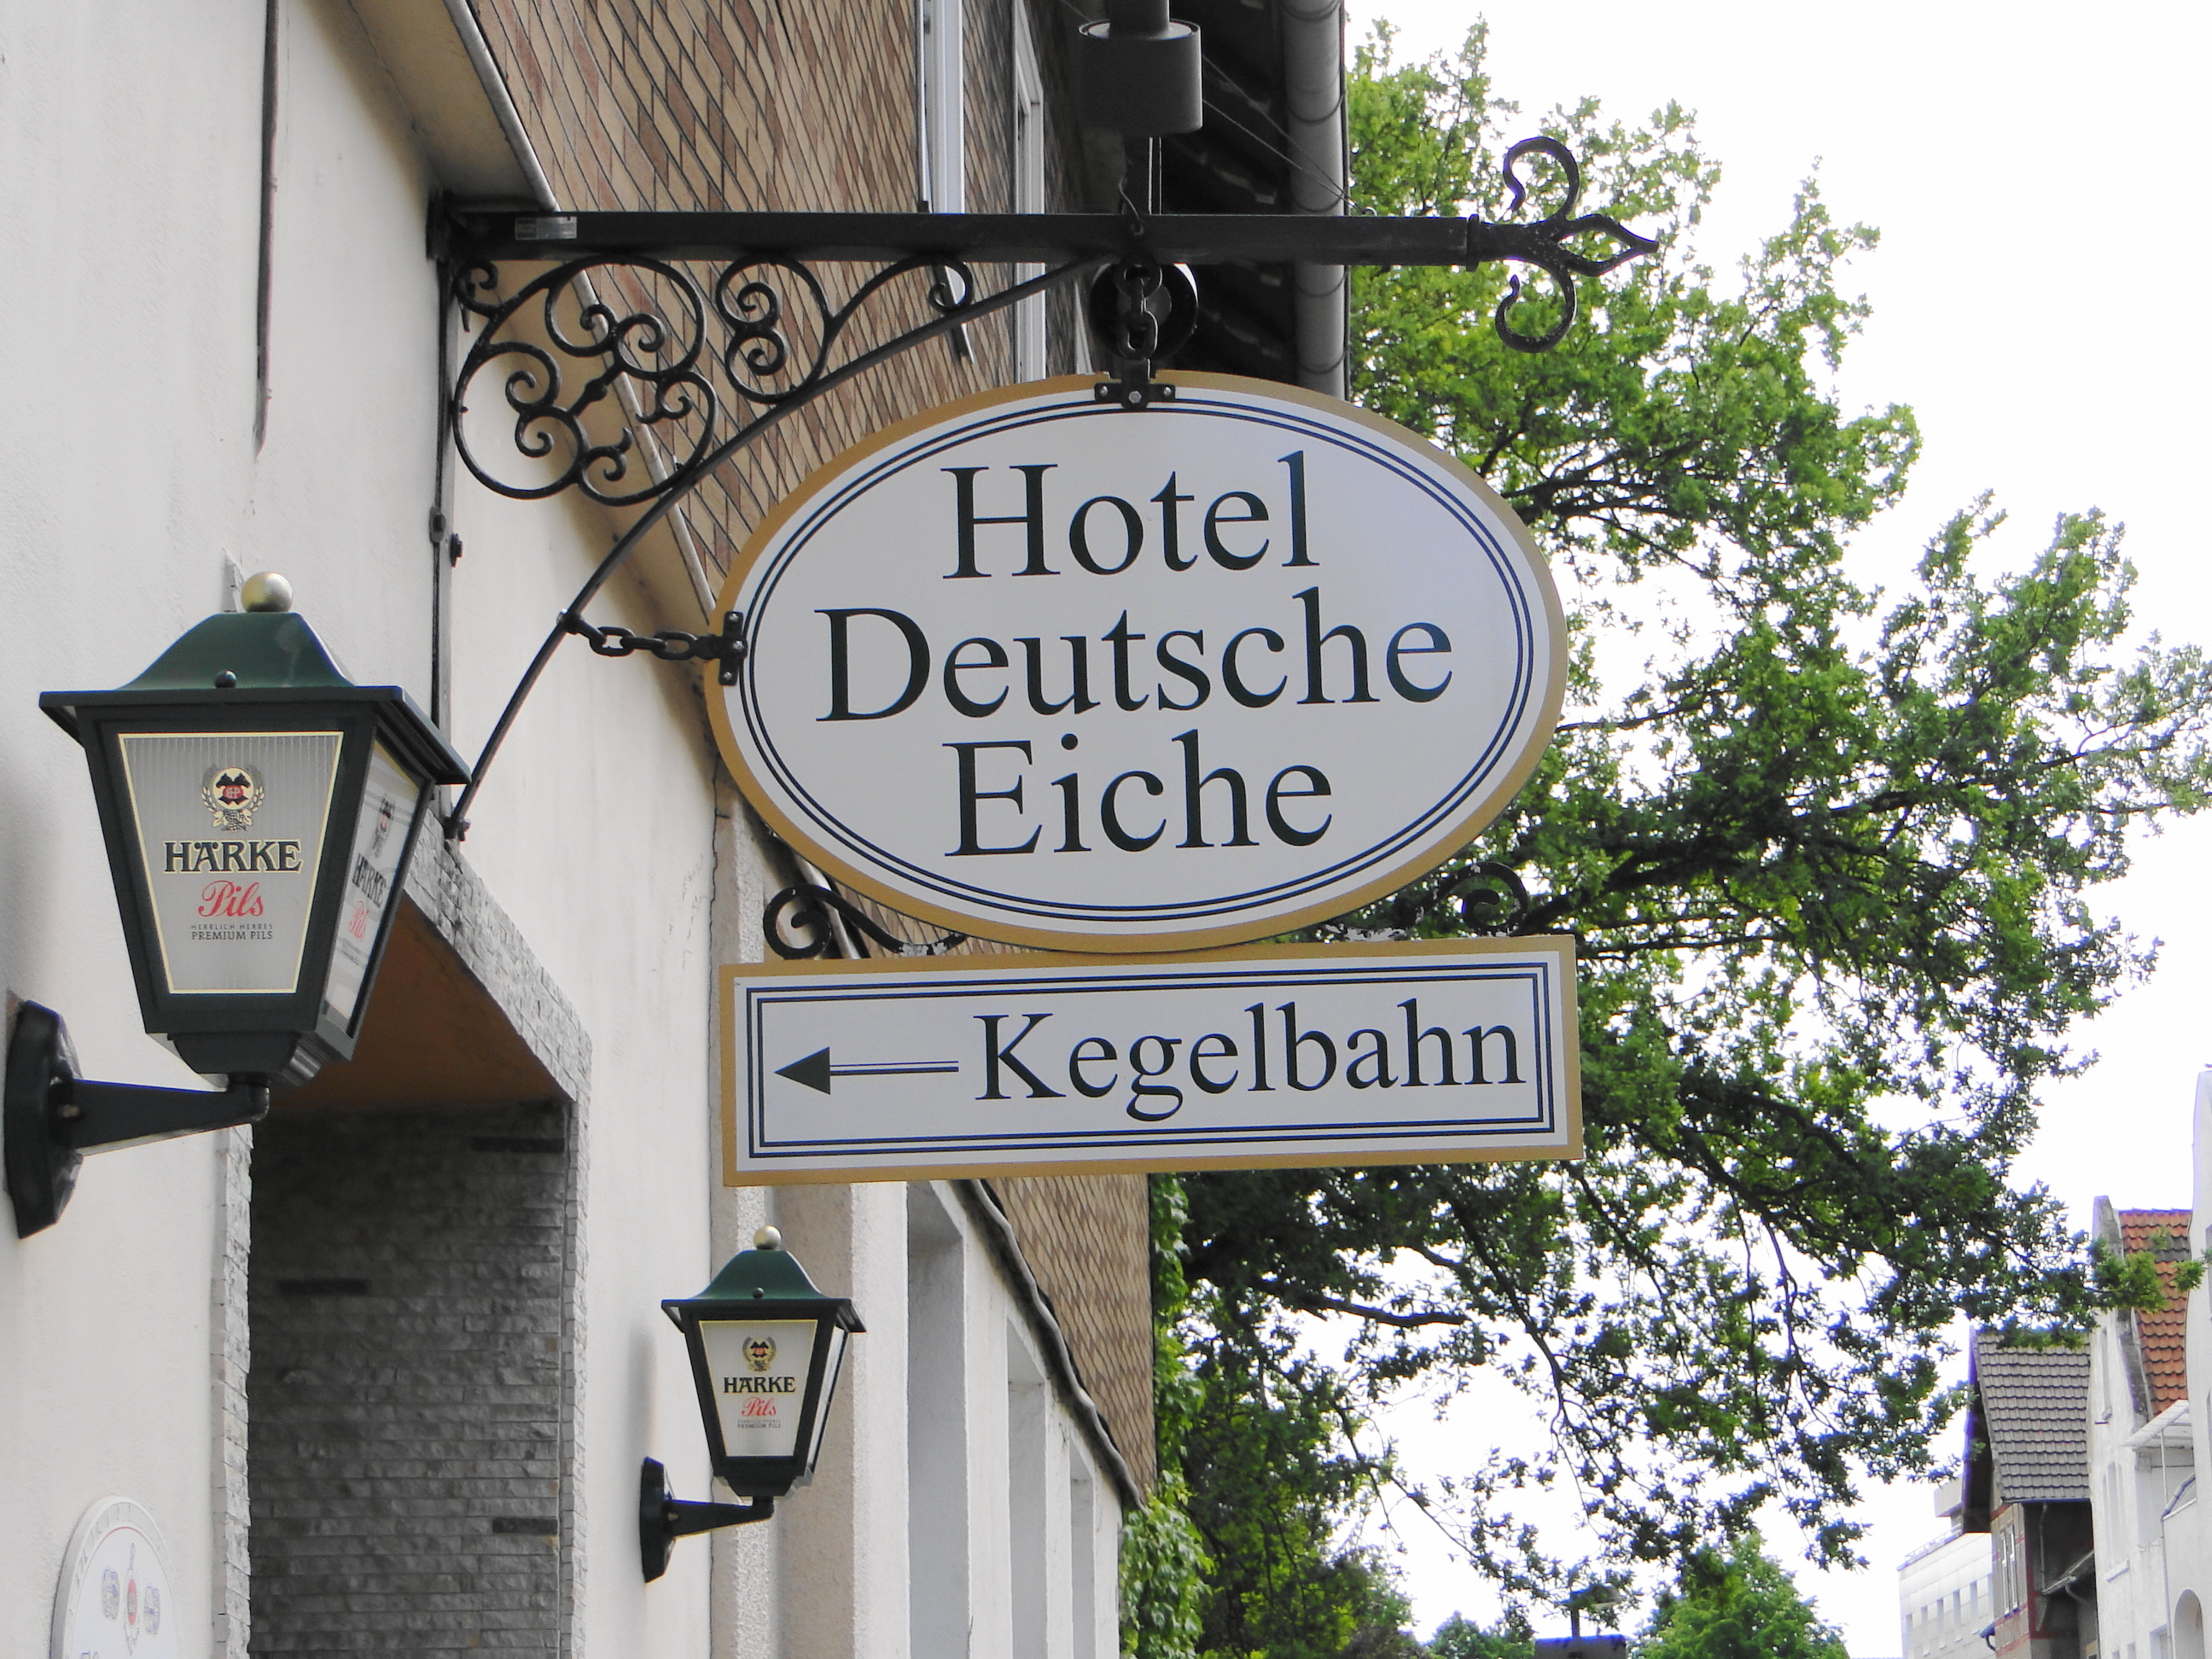 Hotel Deutsche Eiche Kegelbahn in der Bahnhofstr. 16